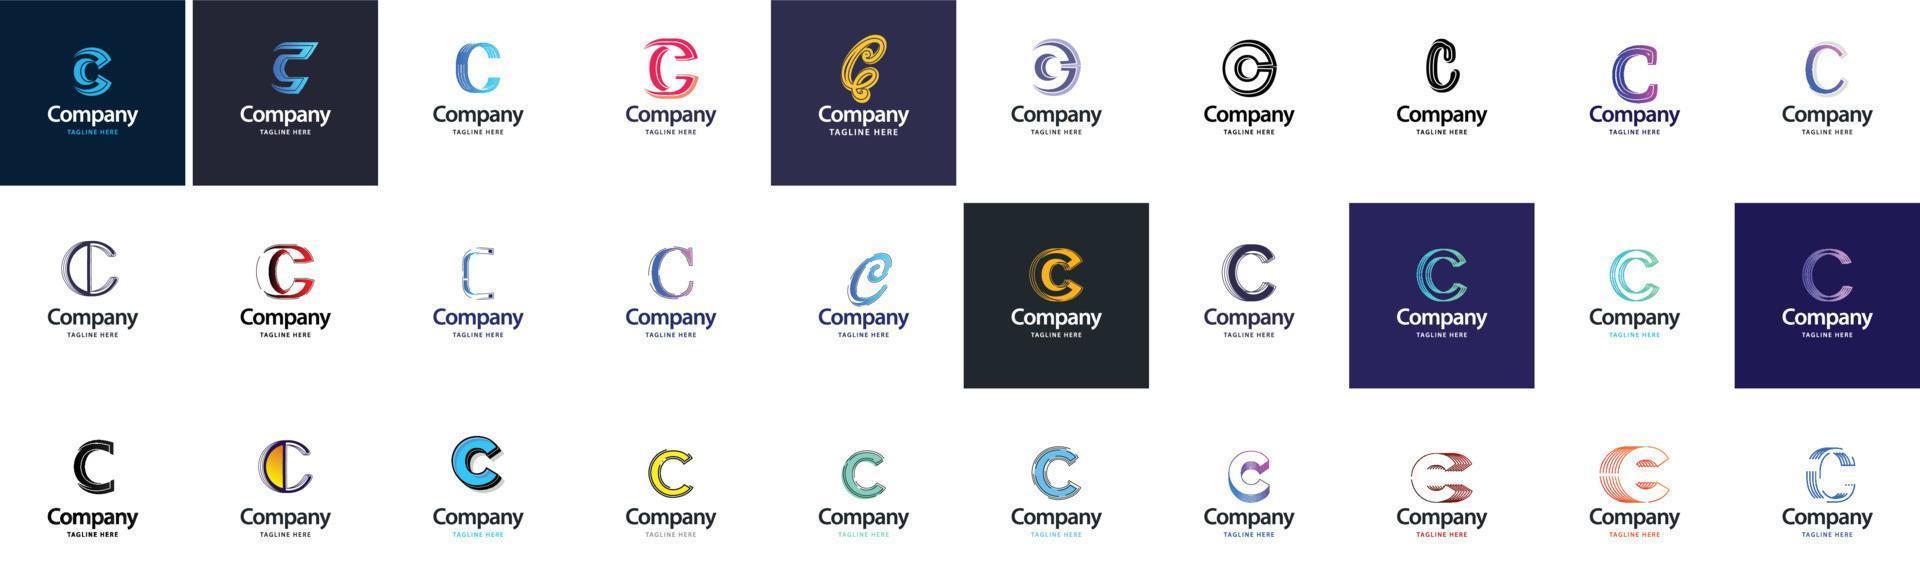 c coleção de logotipo. 30 coleção de logotipos de negócios para empresa financeira ou agência de design. ilustração vetorial da marca vetor